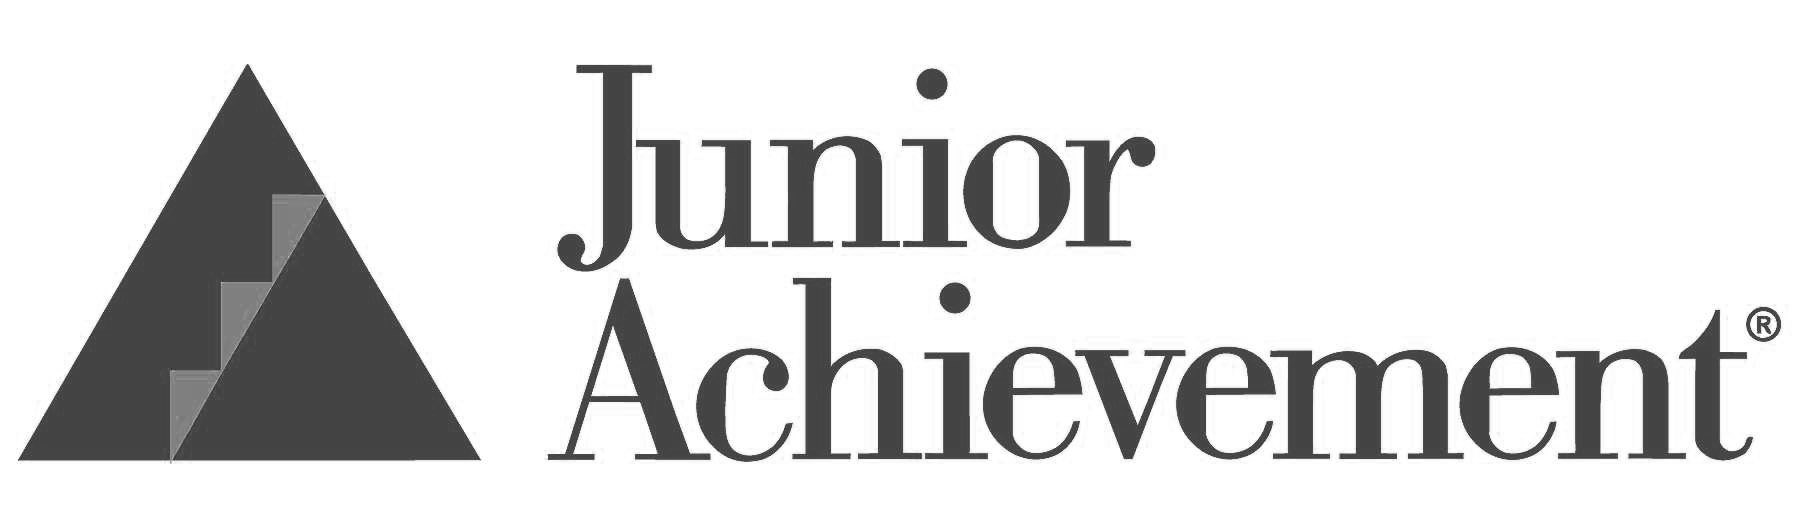 junior_achievement_logo.jpg